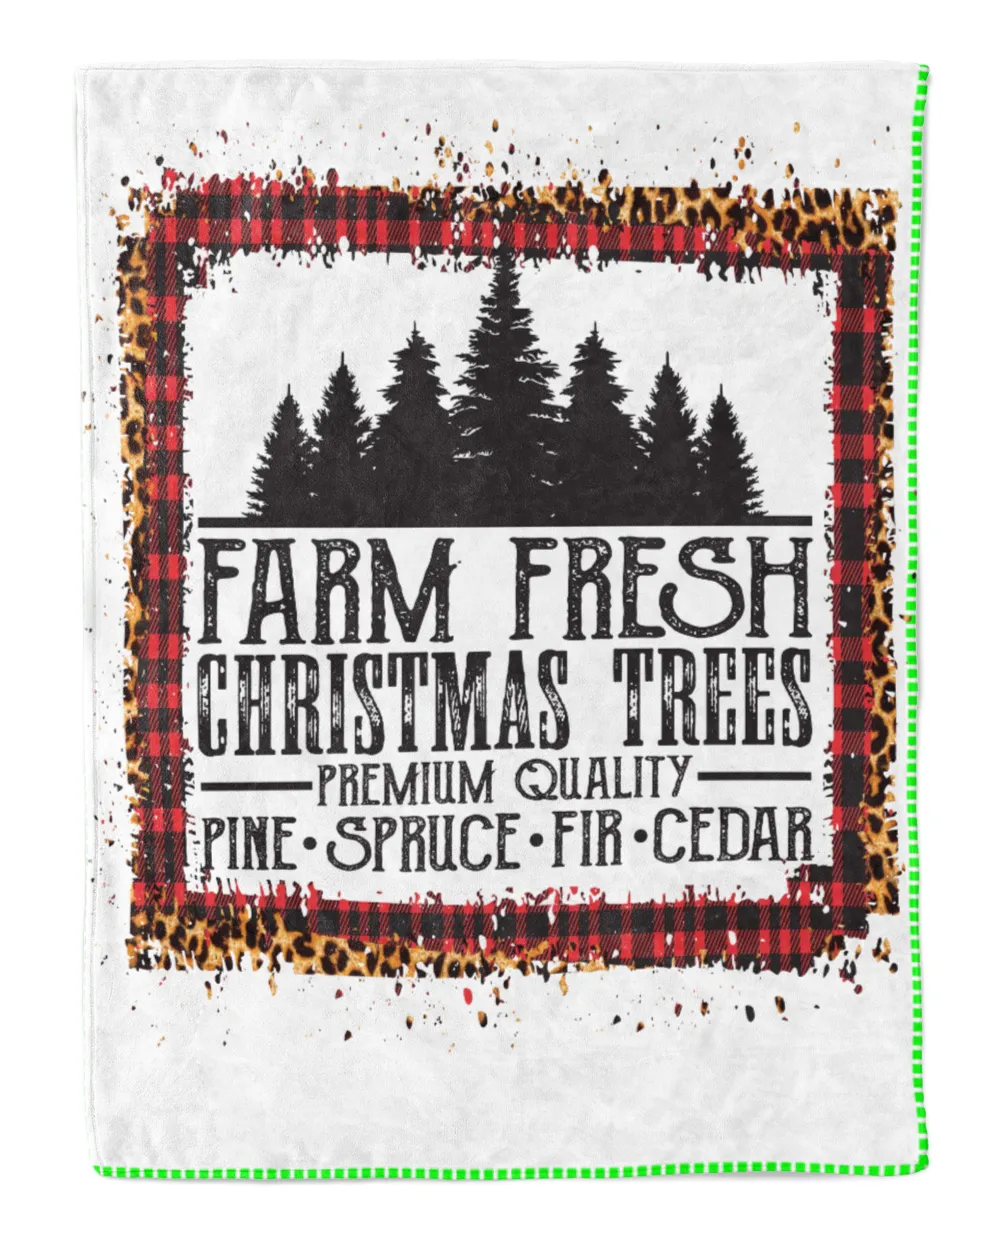 Farm Fresh Christmas Trees Pine Spruce Fir Cedar Christmas Vibes